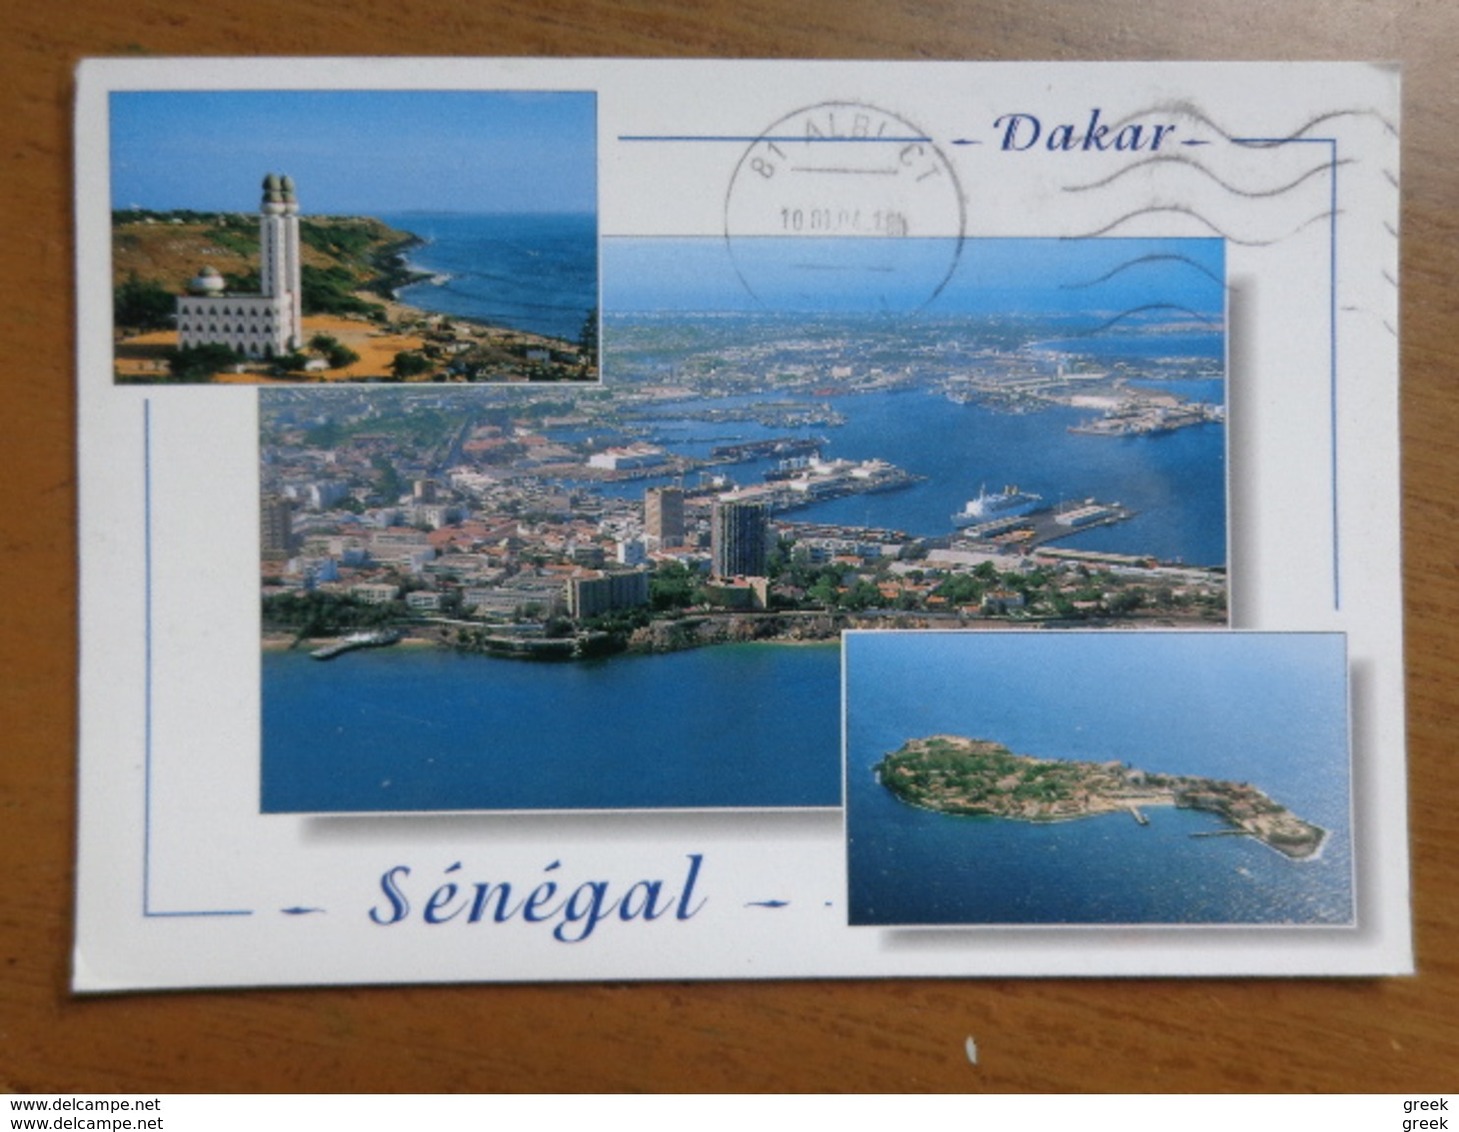 Doos postkaarten (2kg 245) Allerlei landen en thema's (zie foto's)